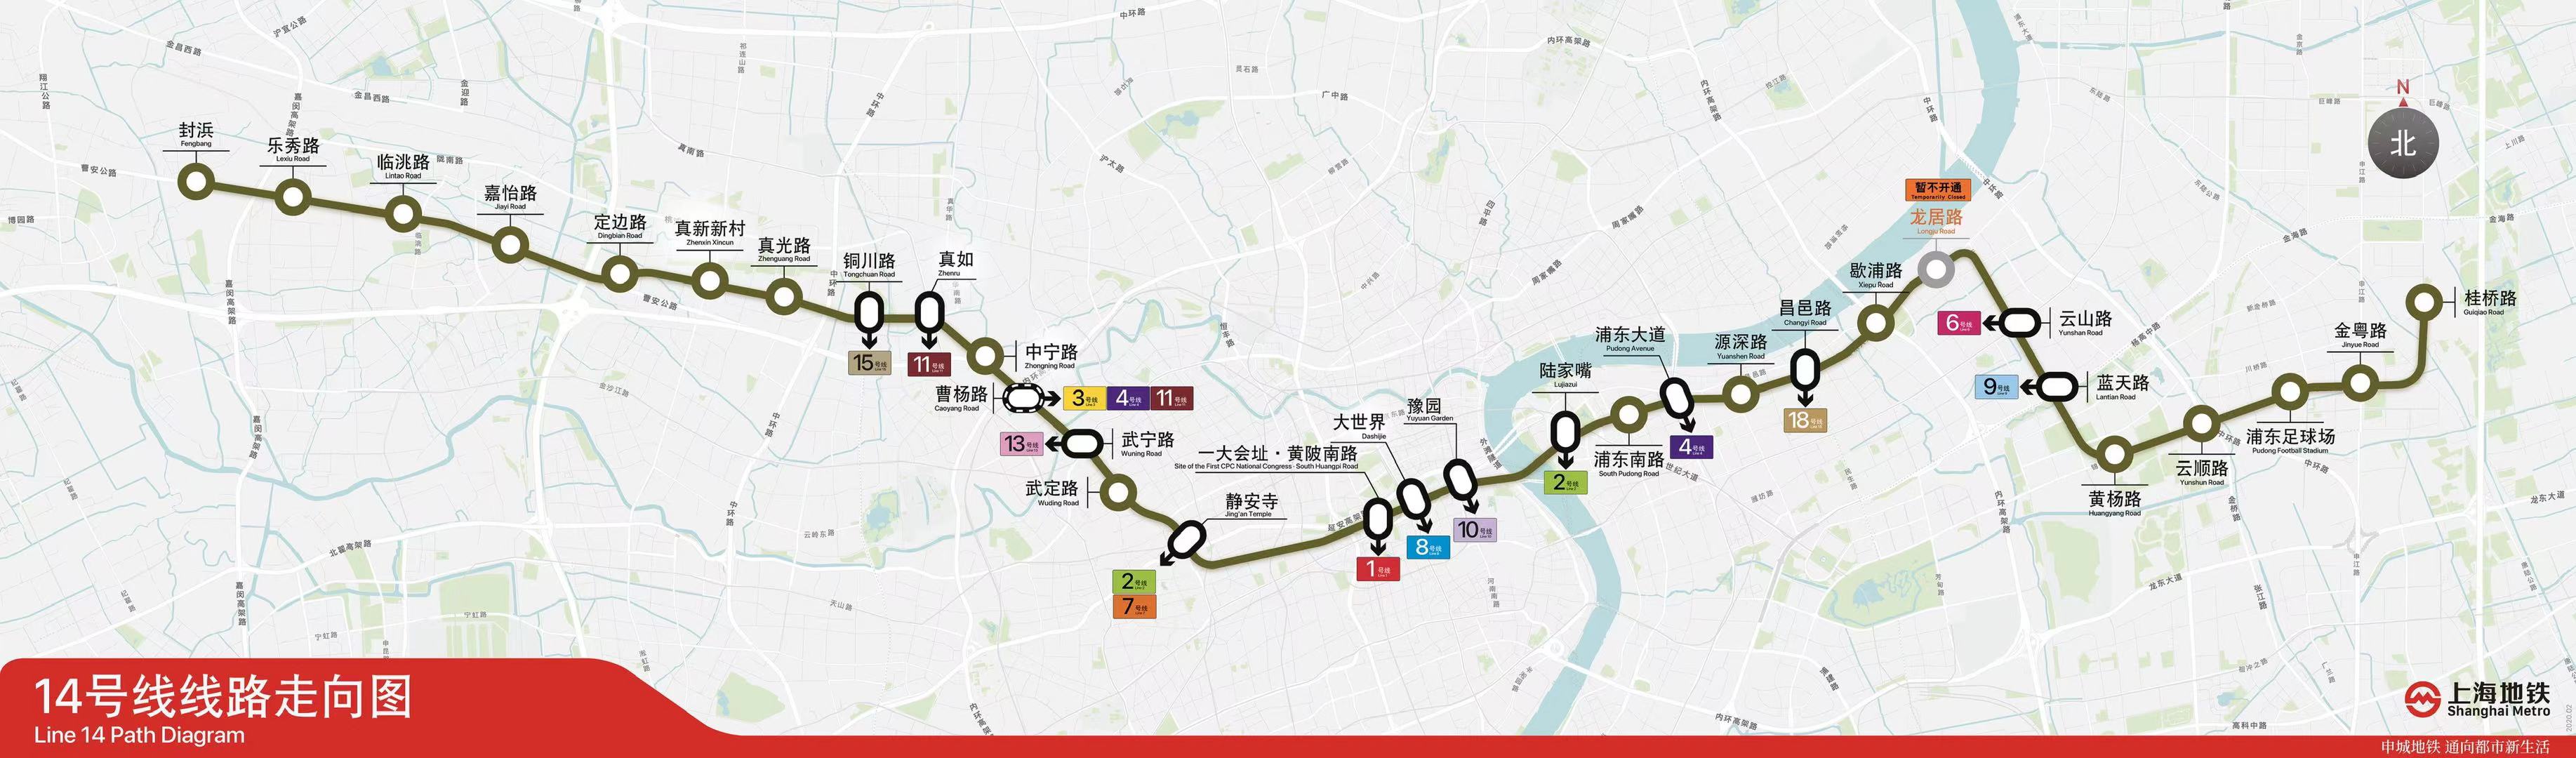 上海轨道交通14号线走向图  本文图片均为上海地铁提供